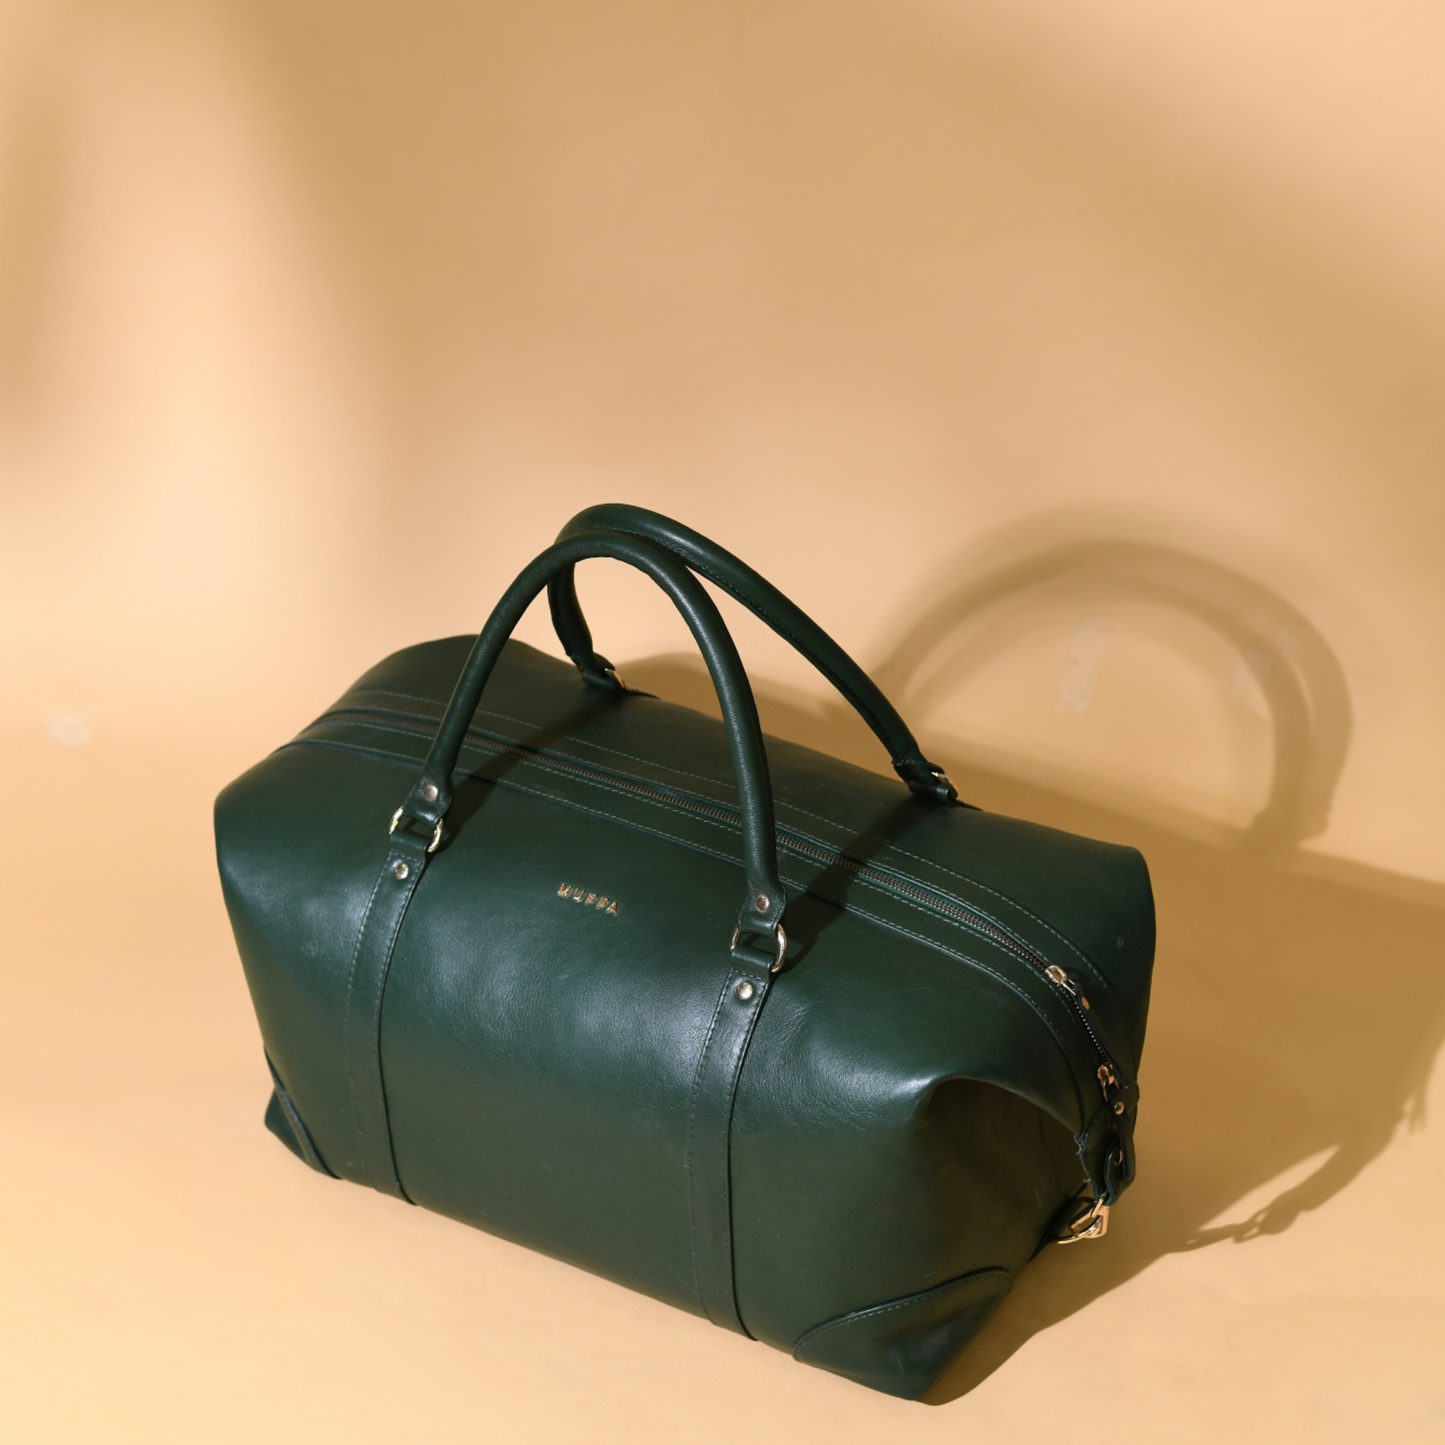 Travel weekender bag - I Green